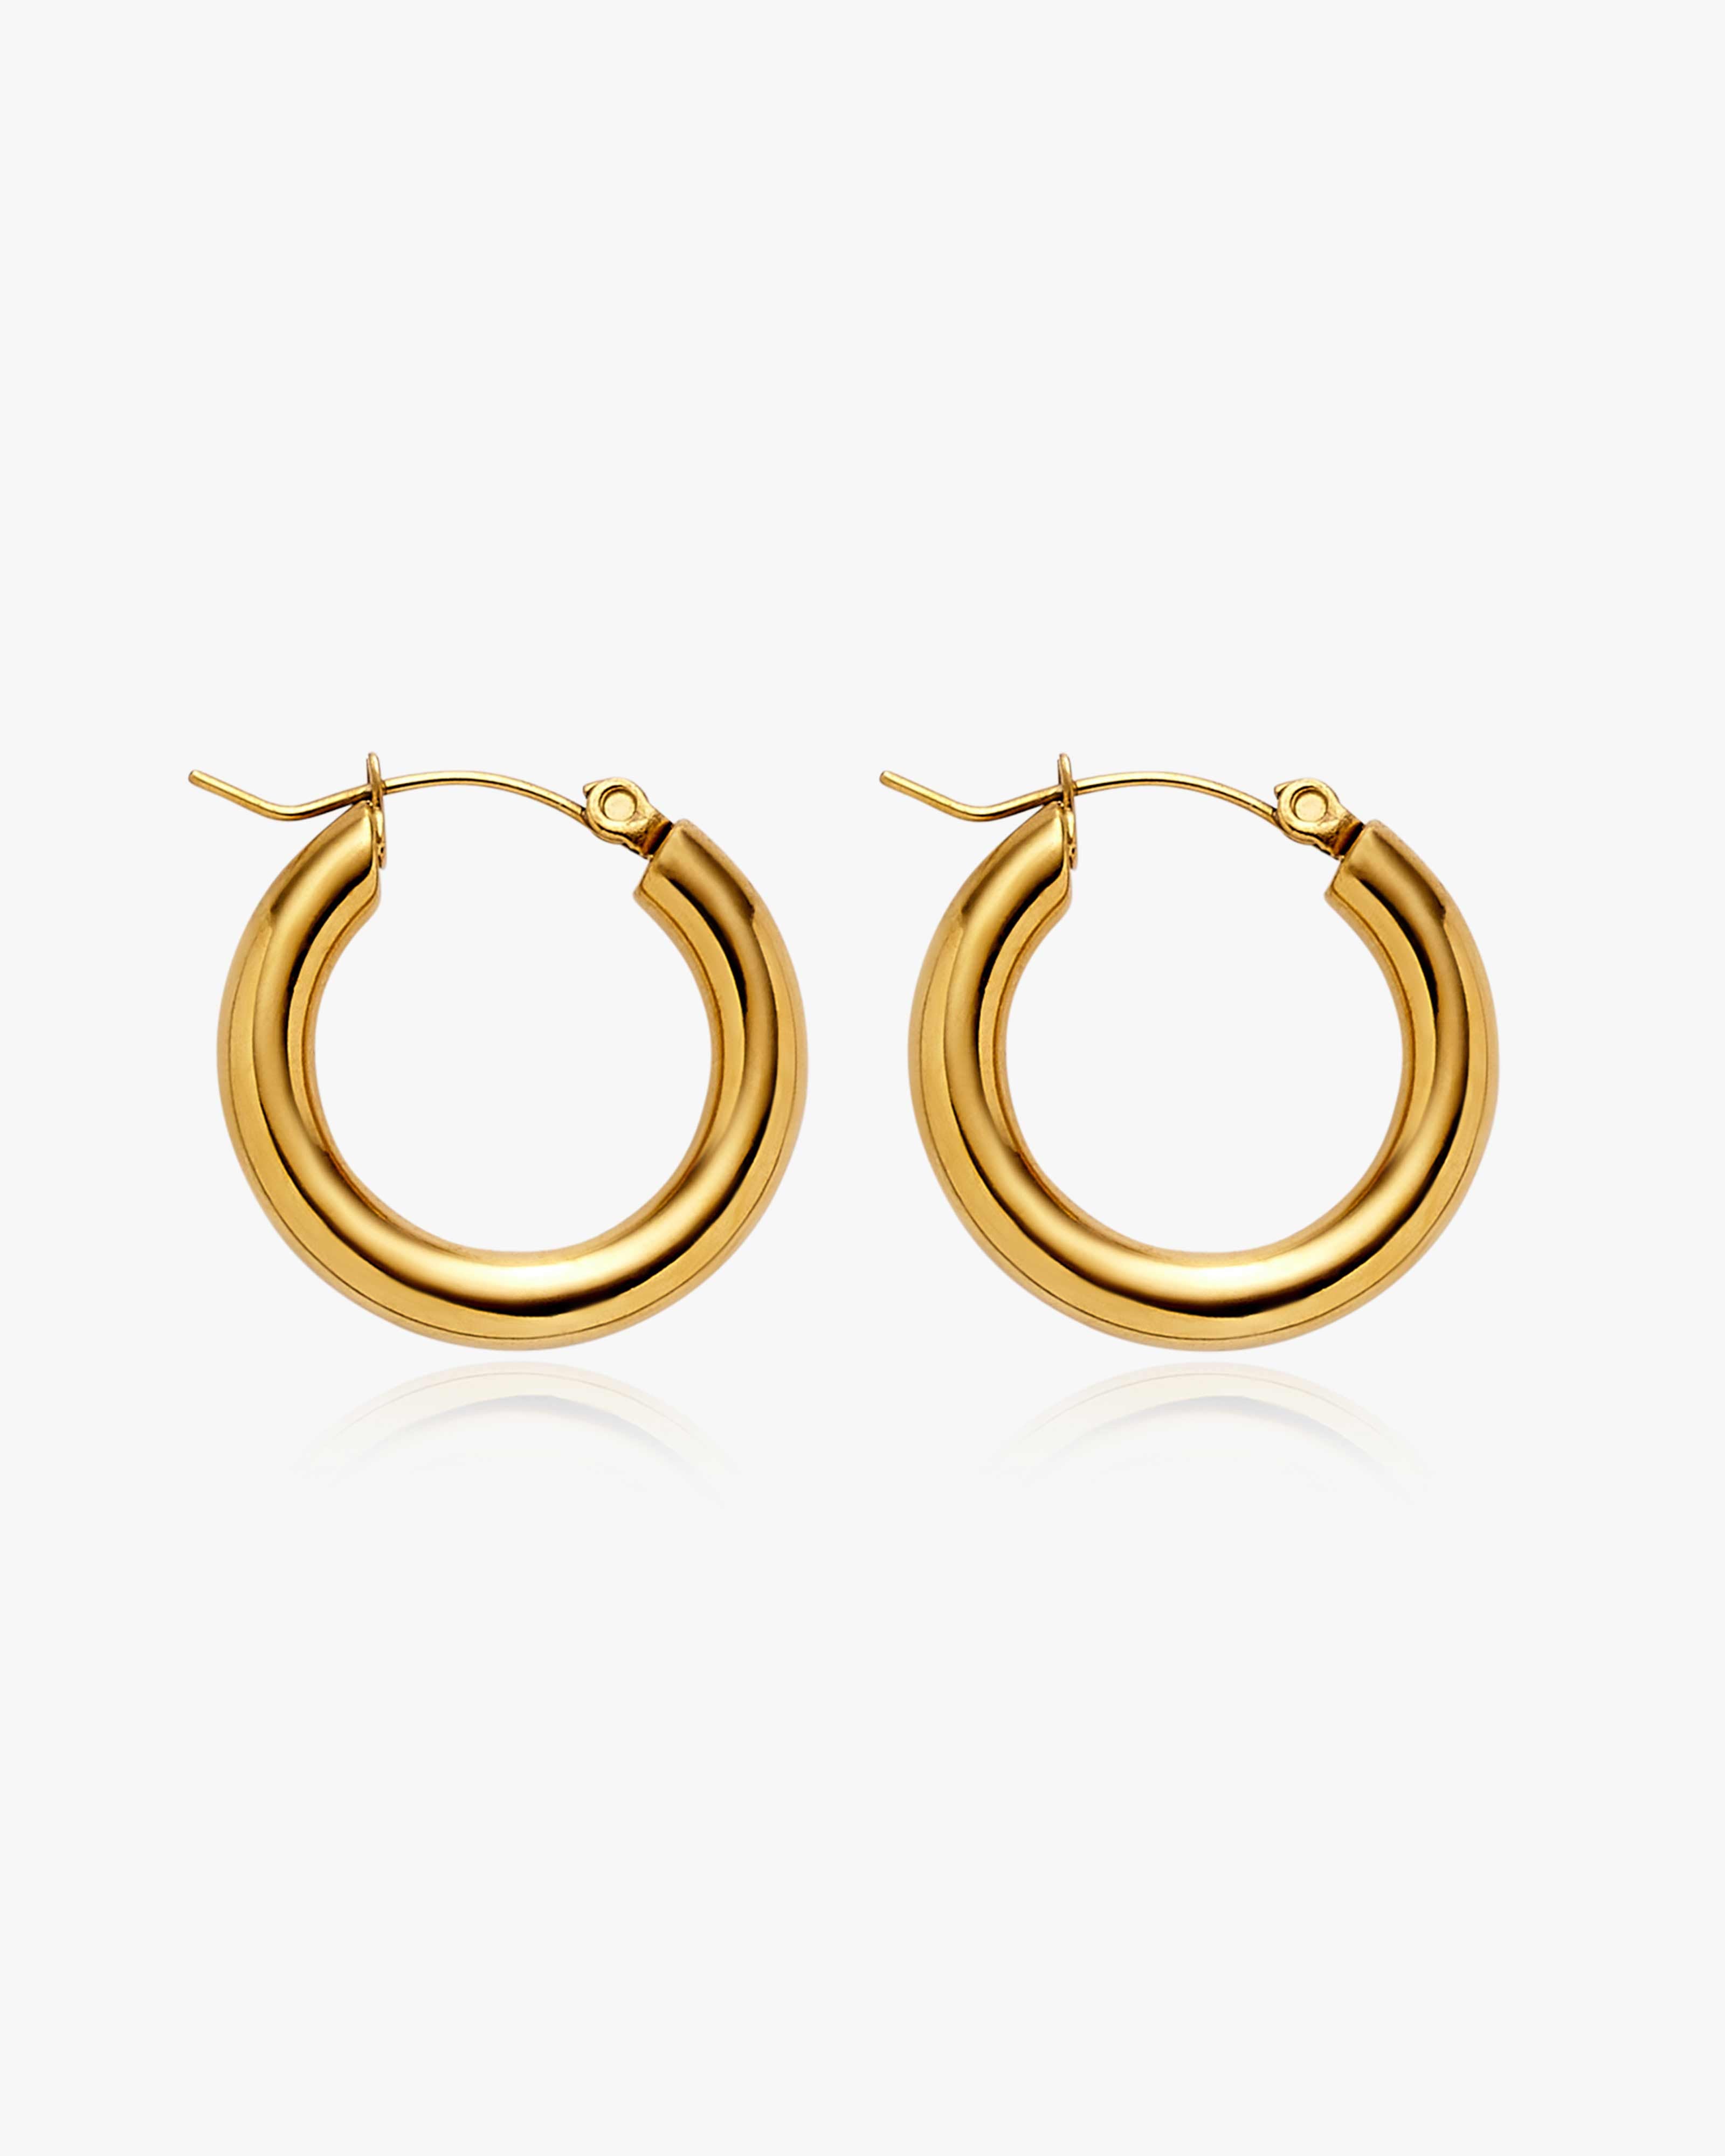 Thin Gold Hoop Earrings